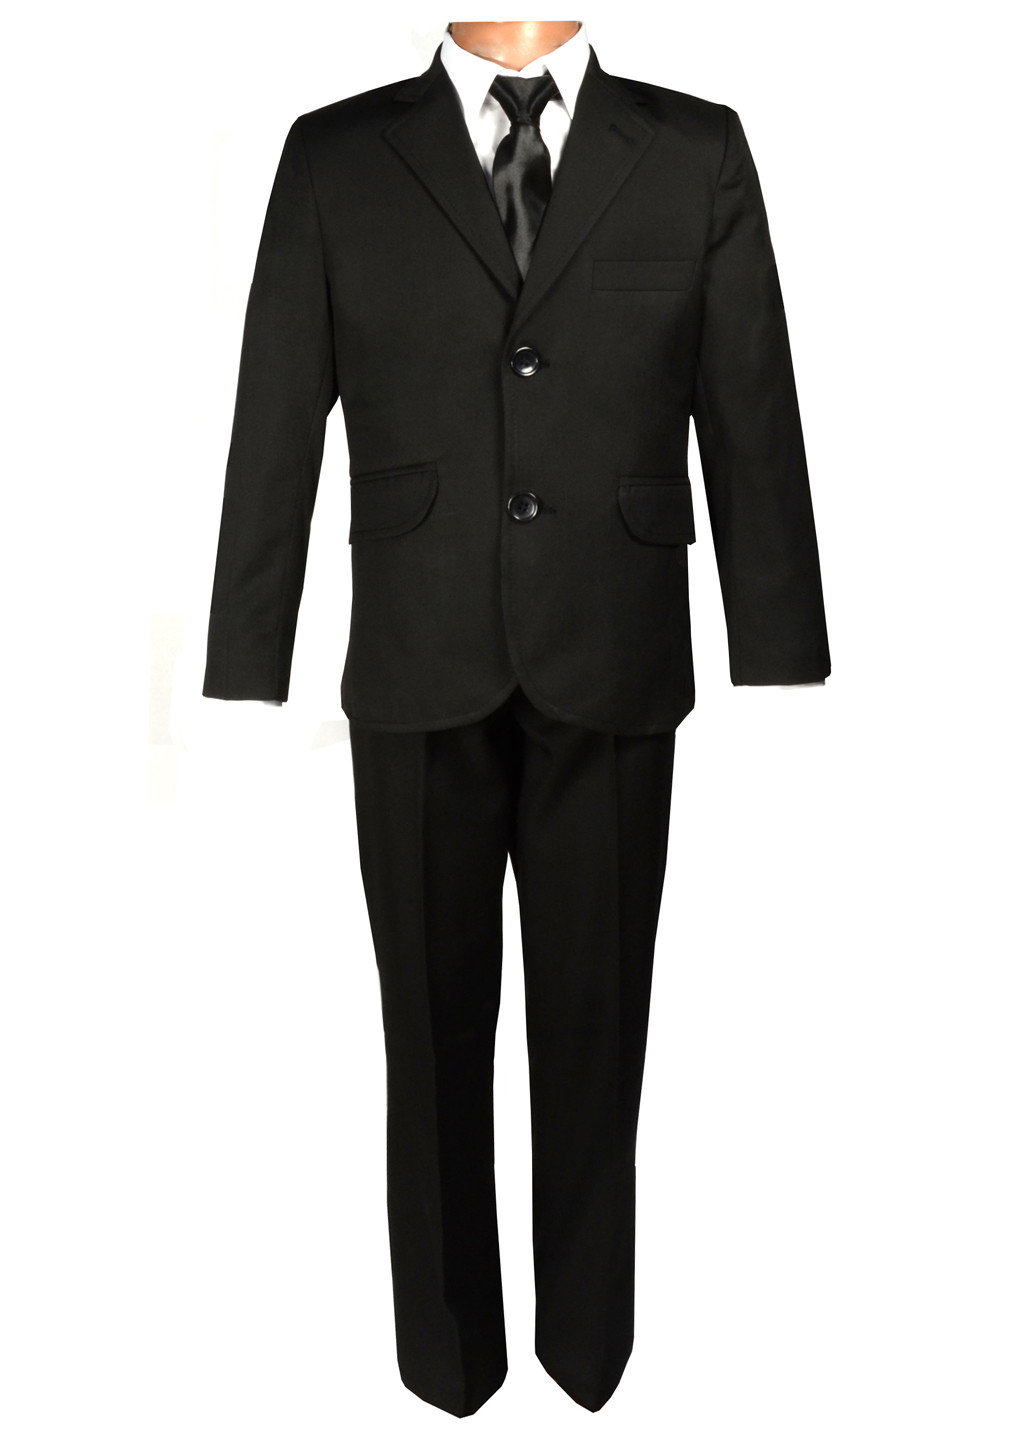 Черный демисезонный костюм (пиджак, рубашка, галстук) с длинным рукавом Jnf